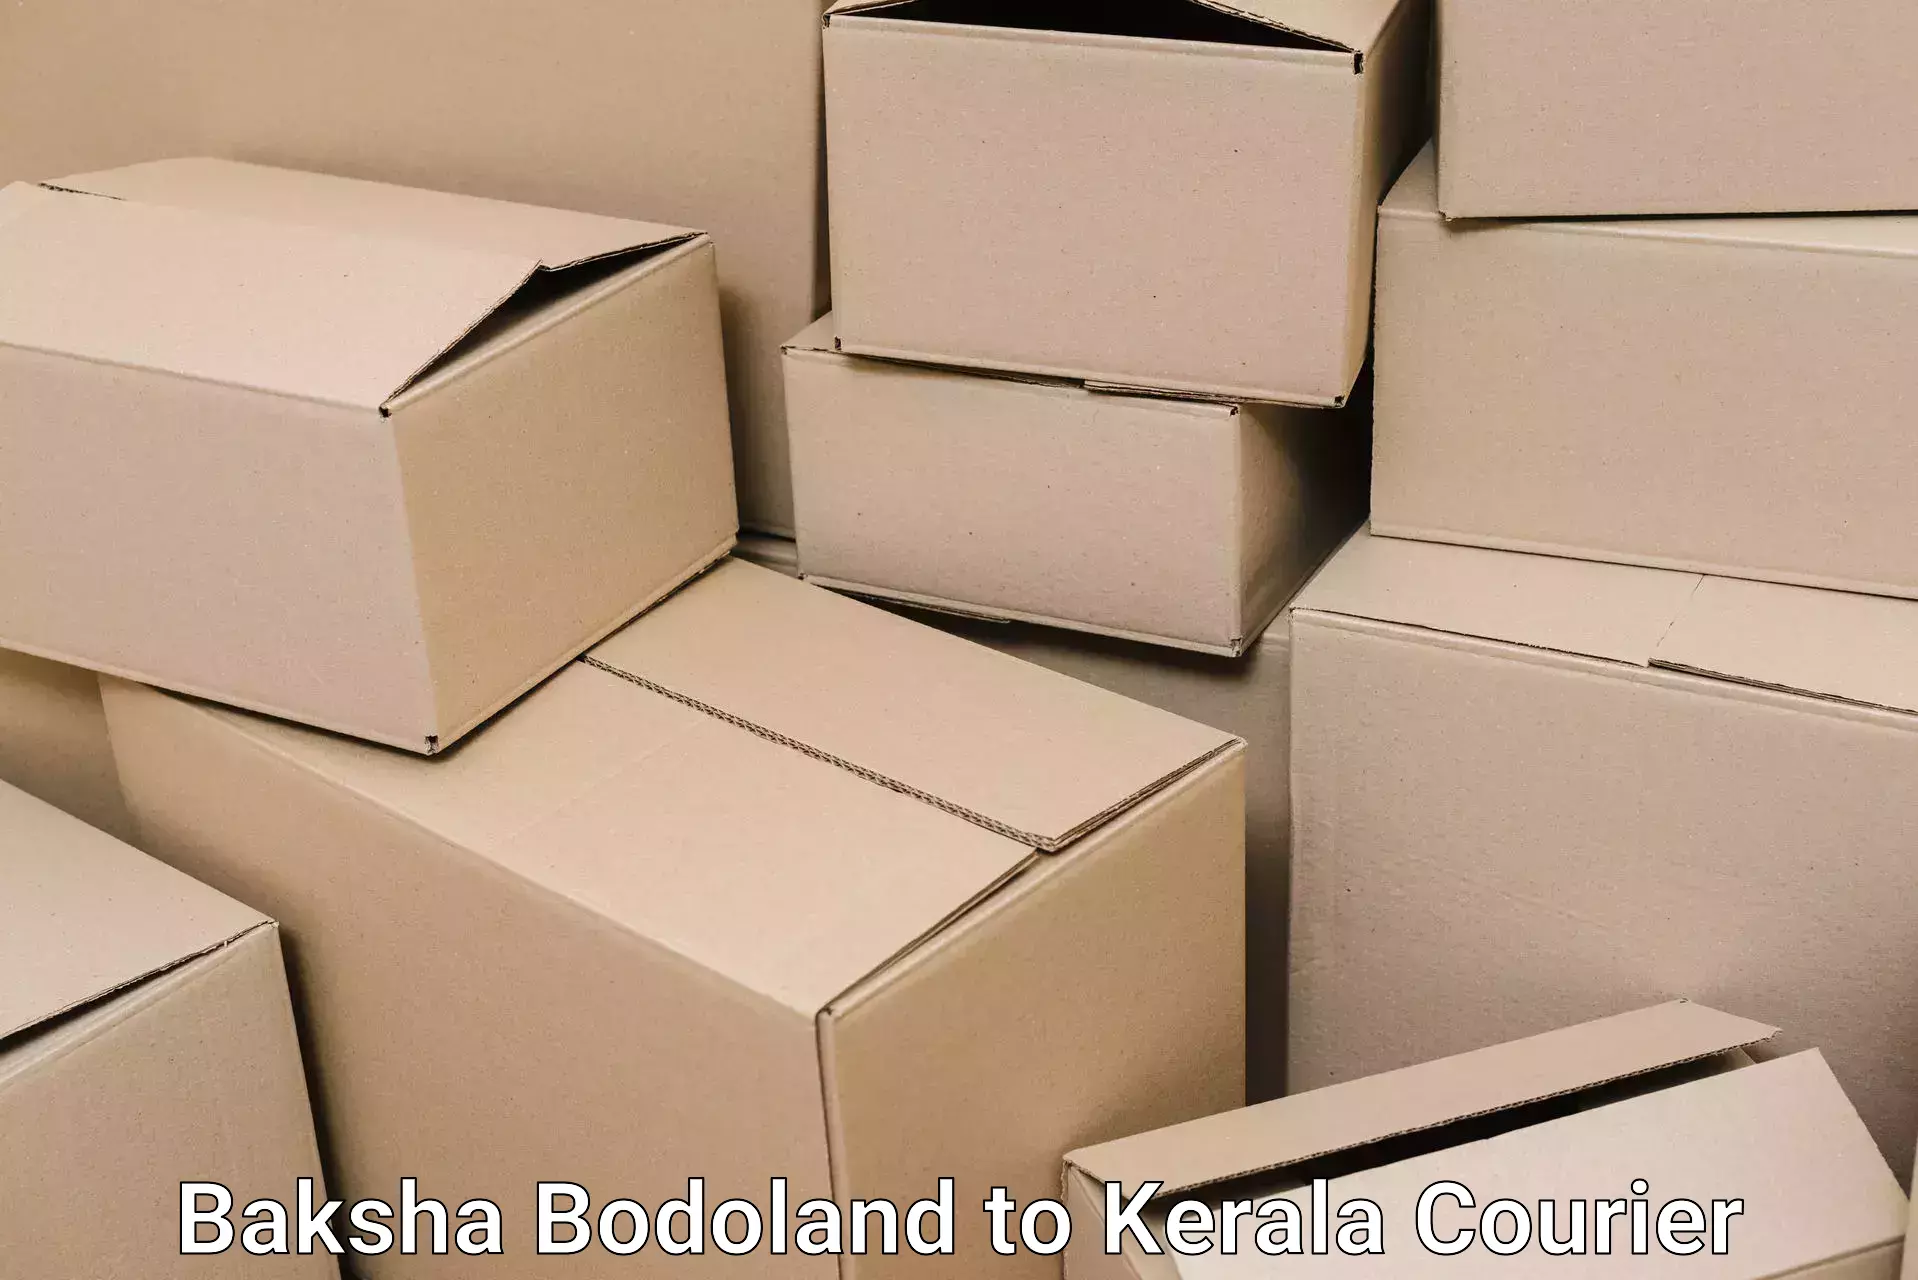 Moving and packing experts Baksha Bodoland to Ernakulam